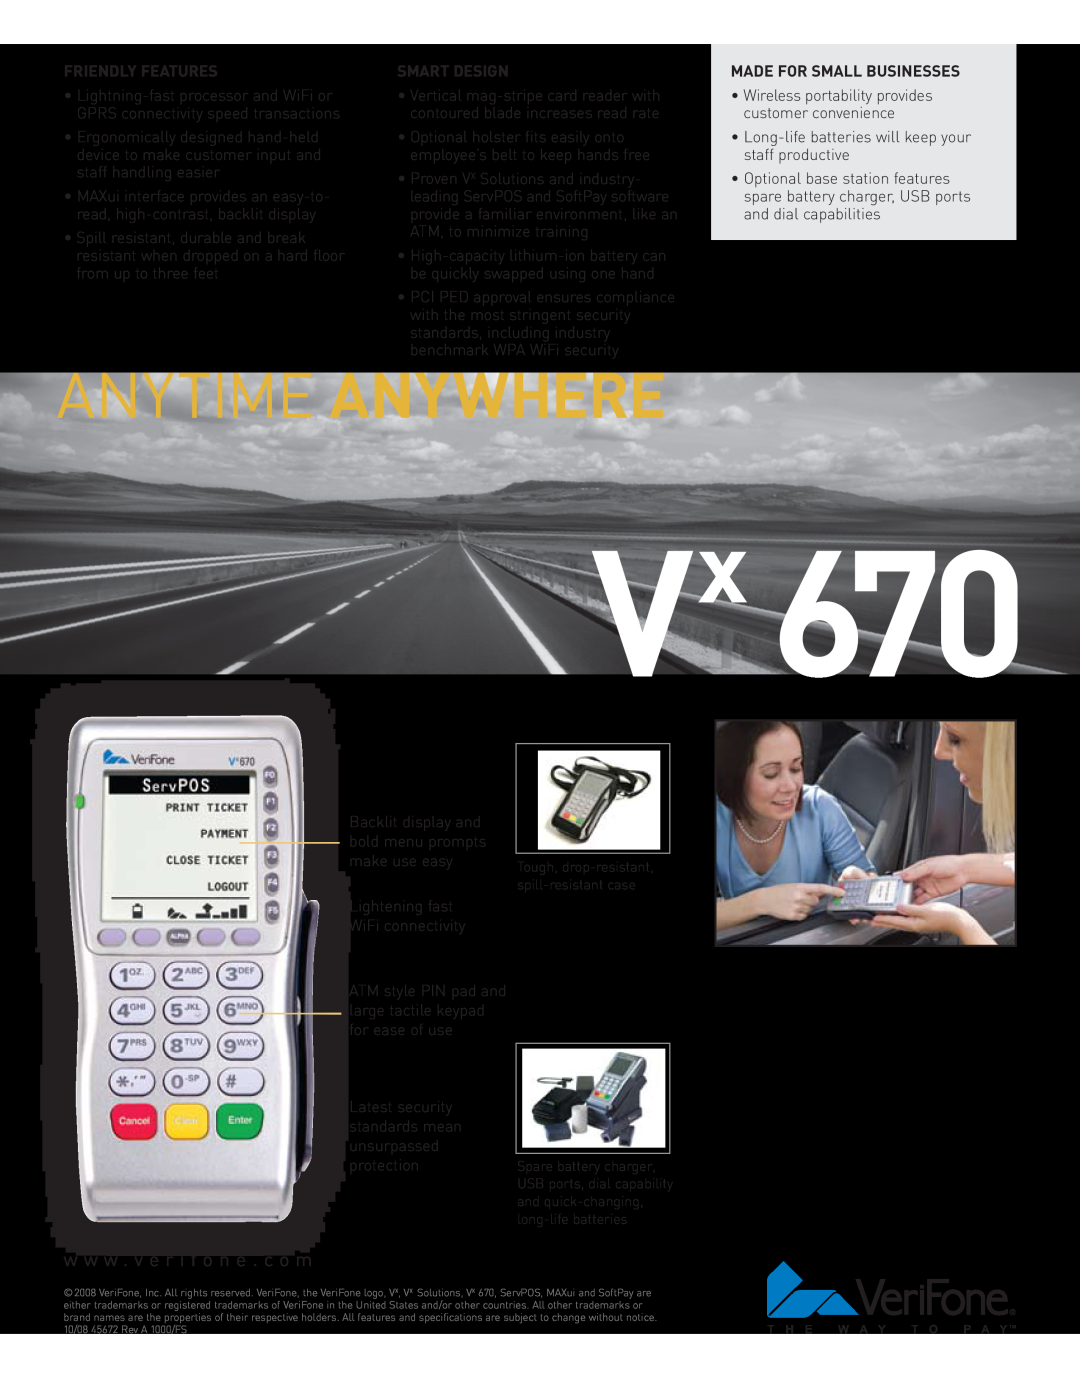 VeriFone Vx 670 manual Anytime Anywhere, w w w . v e r i f o n e . c o m, Friendly Features, Smart Design 